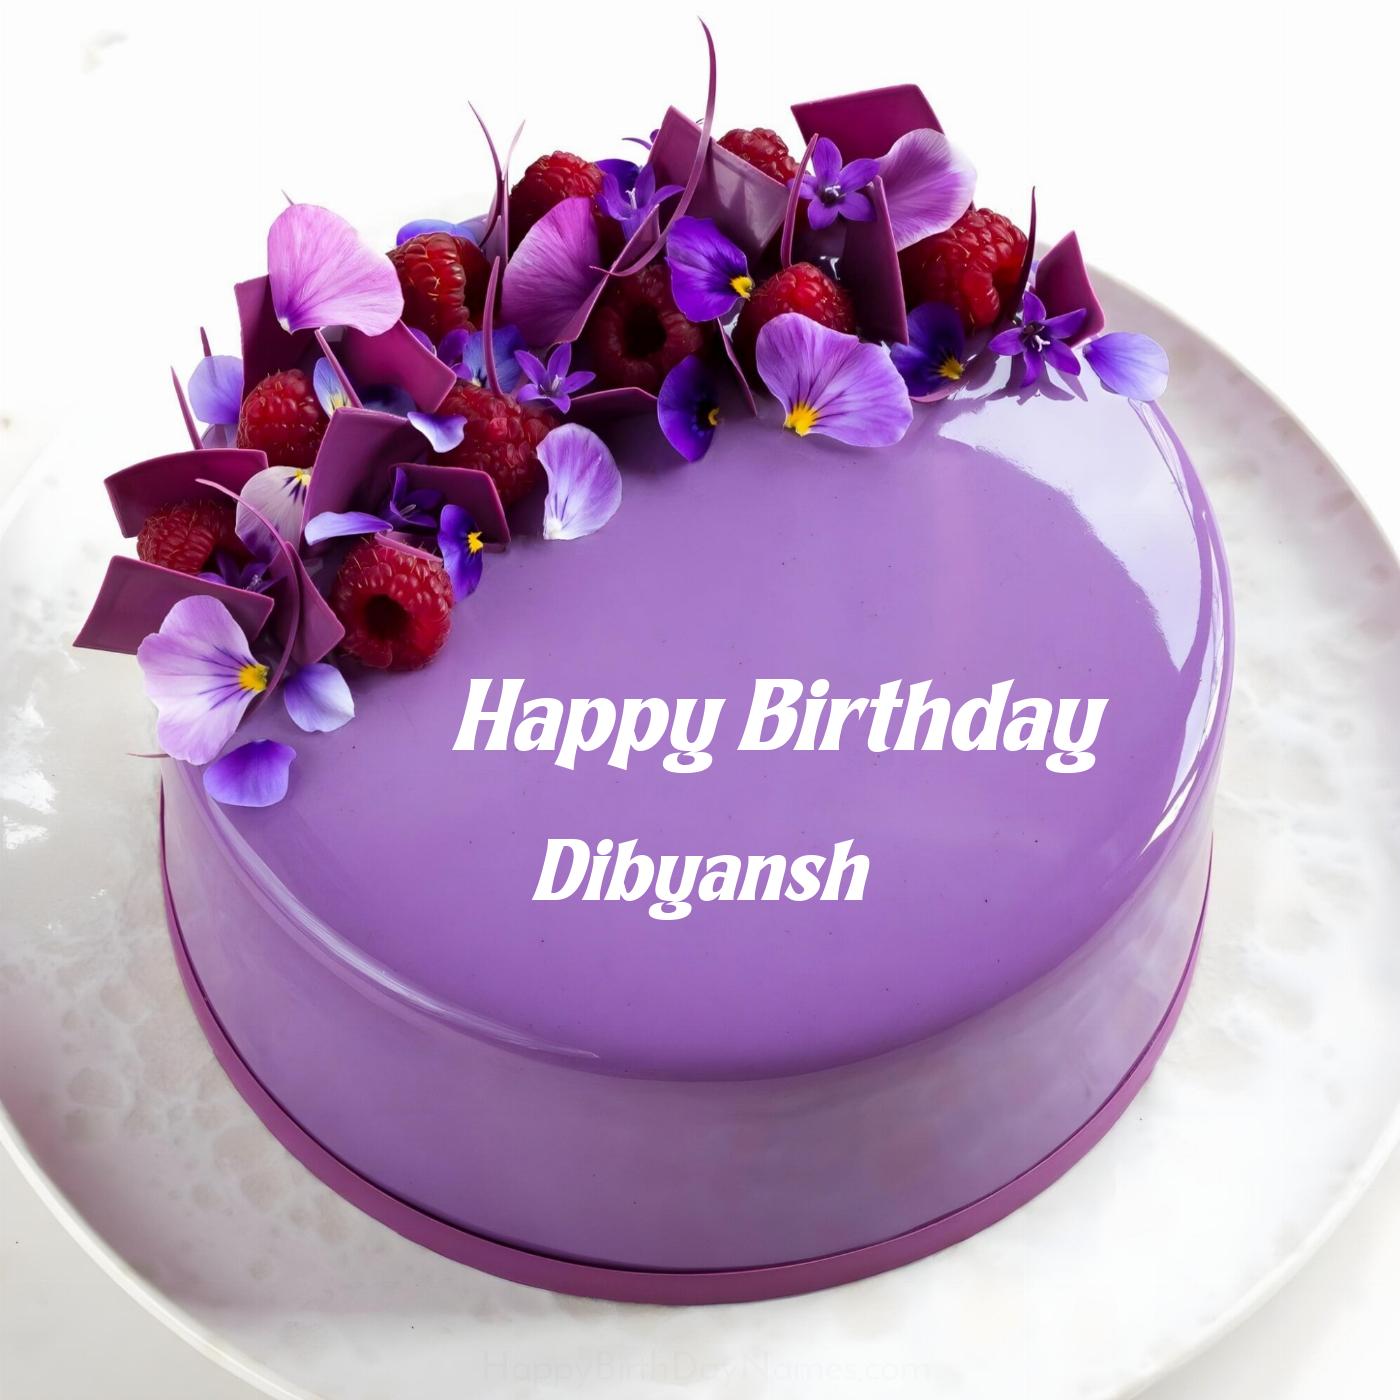 Happy Birthday Dibyansh Violet Raspberry Cake